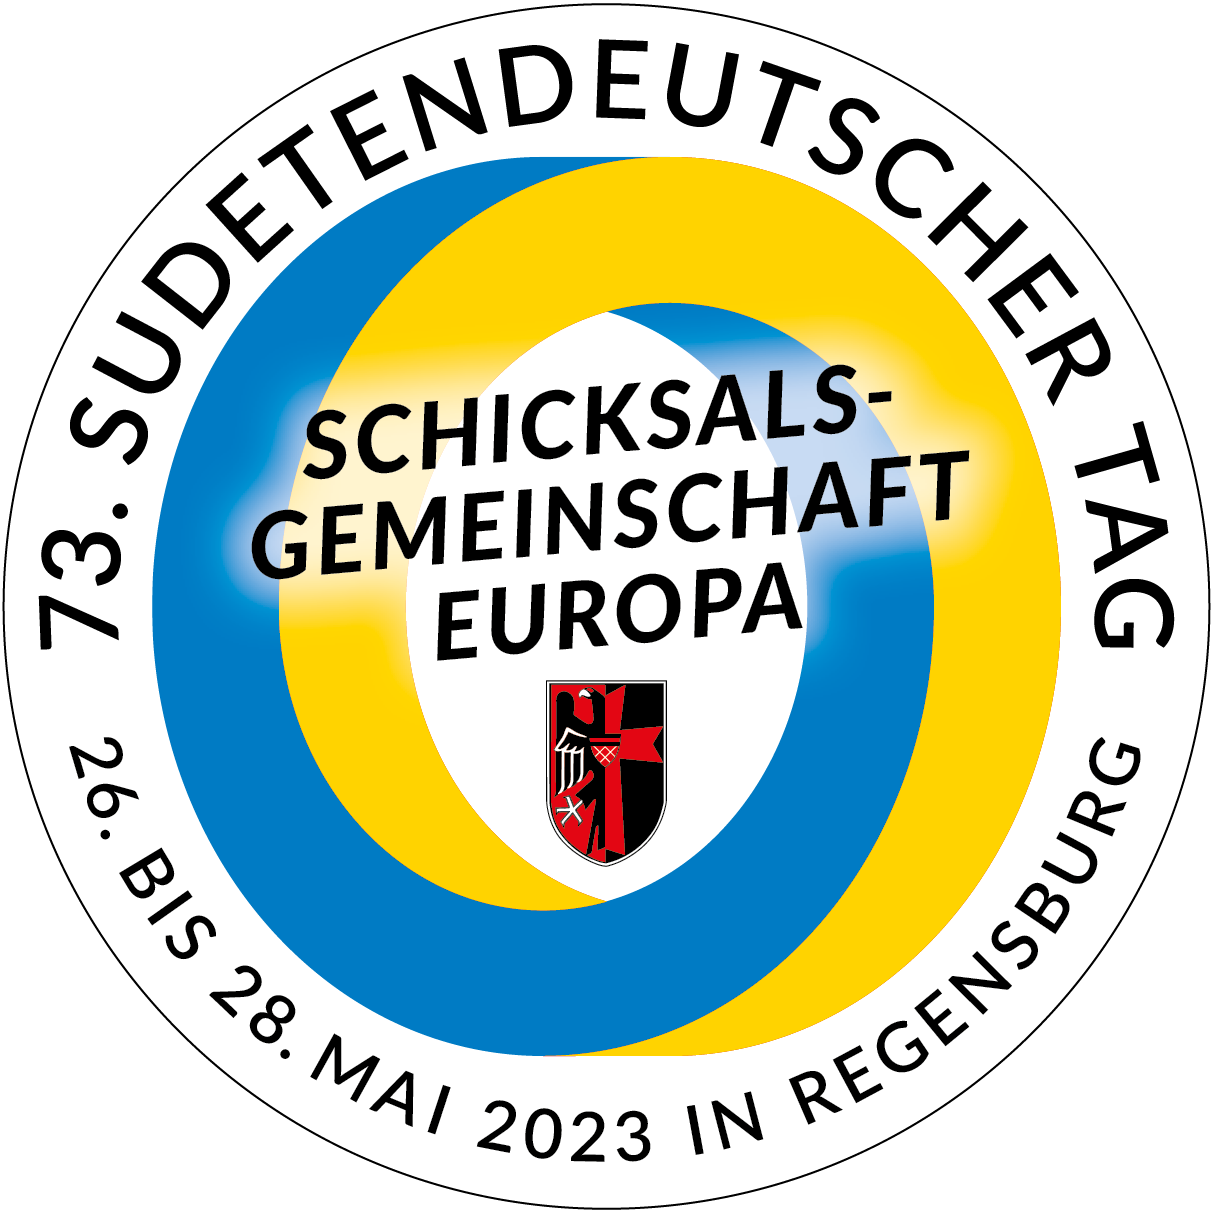 Festabzeichen 73. Sudetendeutscher Tag 2023 in Regensburg